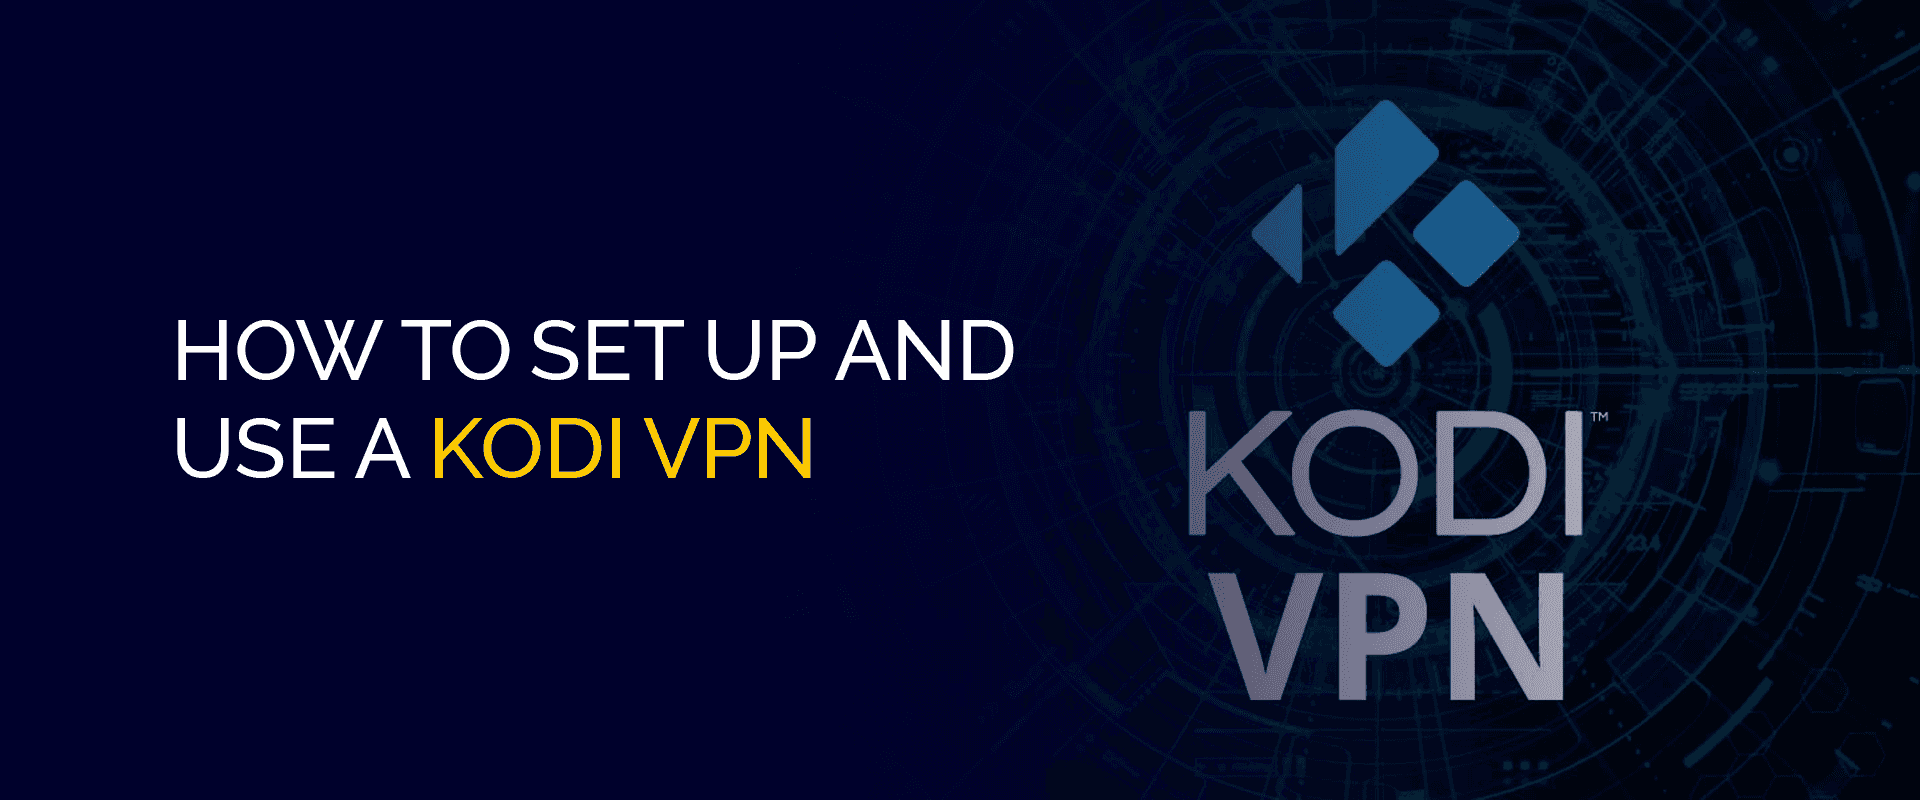 如何设置和使用 Kodi VPN